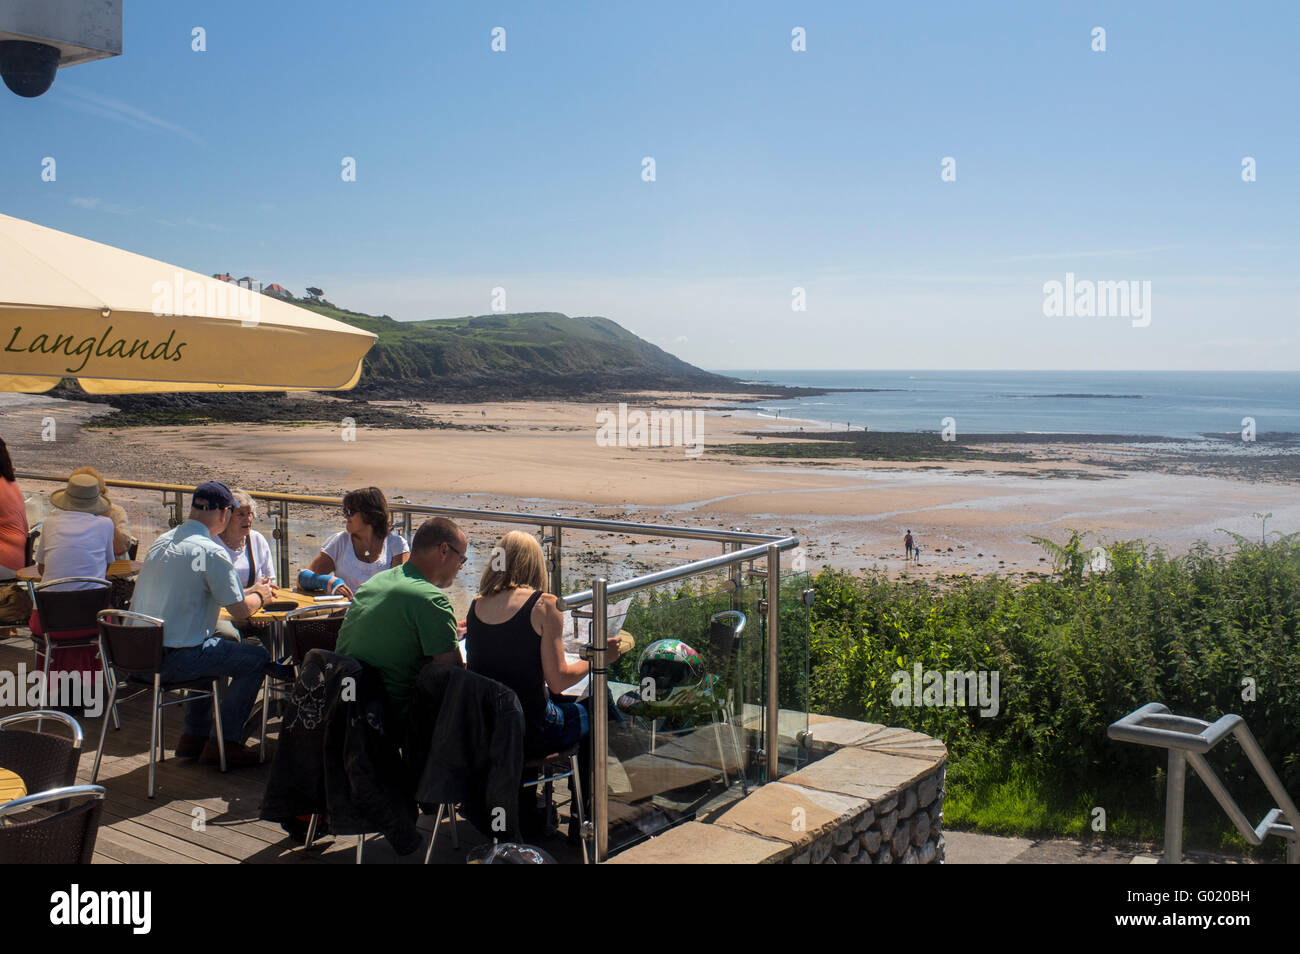 Les personnes bénéficiant d'un verre dans des tables donnant sur la plage de la baie de Langland Péninsule de Gower Swansea County South Wales UK Banque D'Images